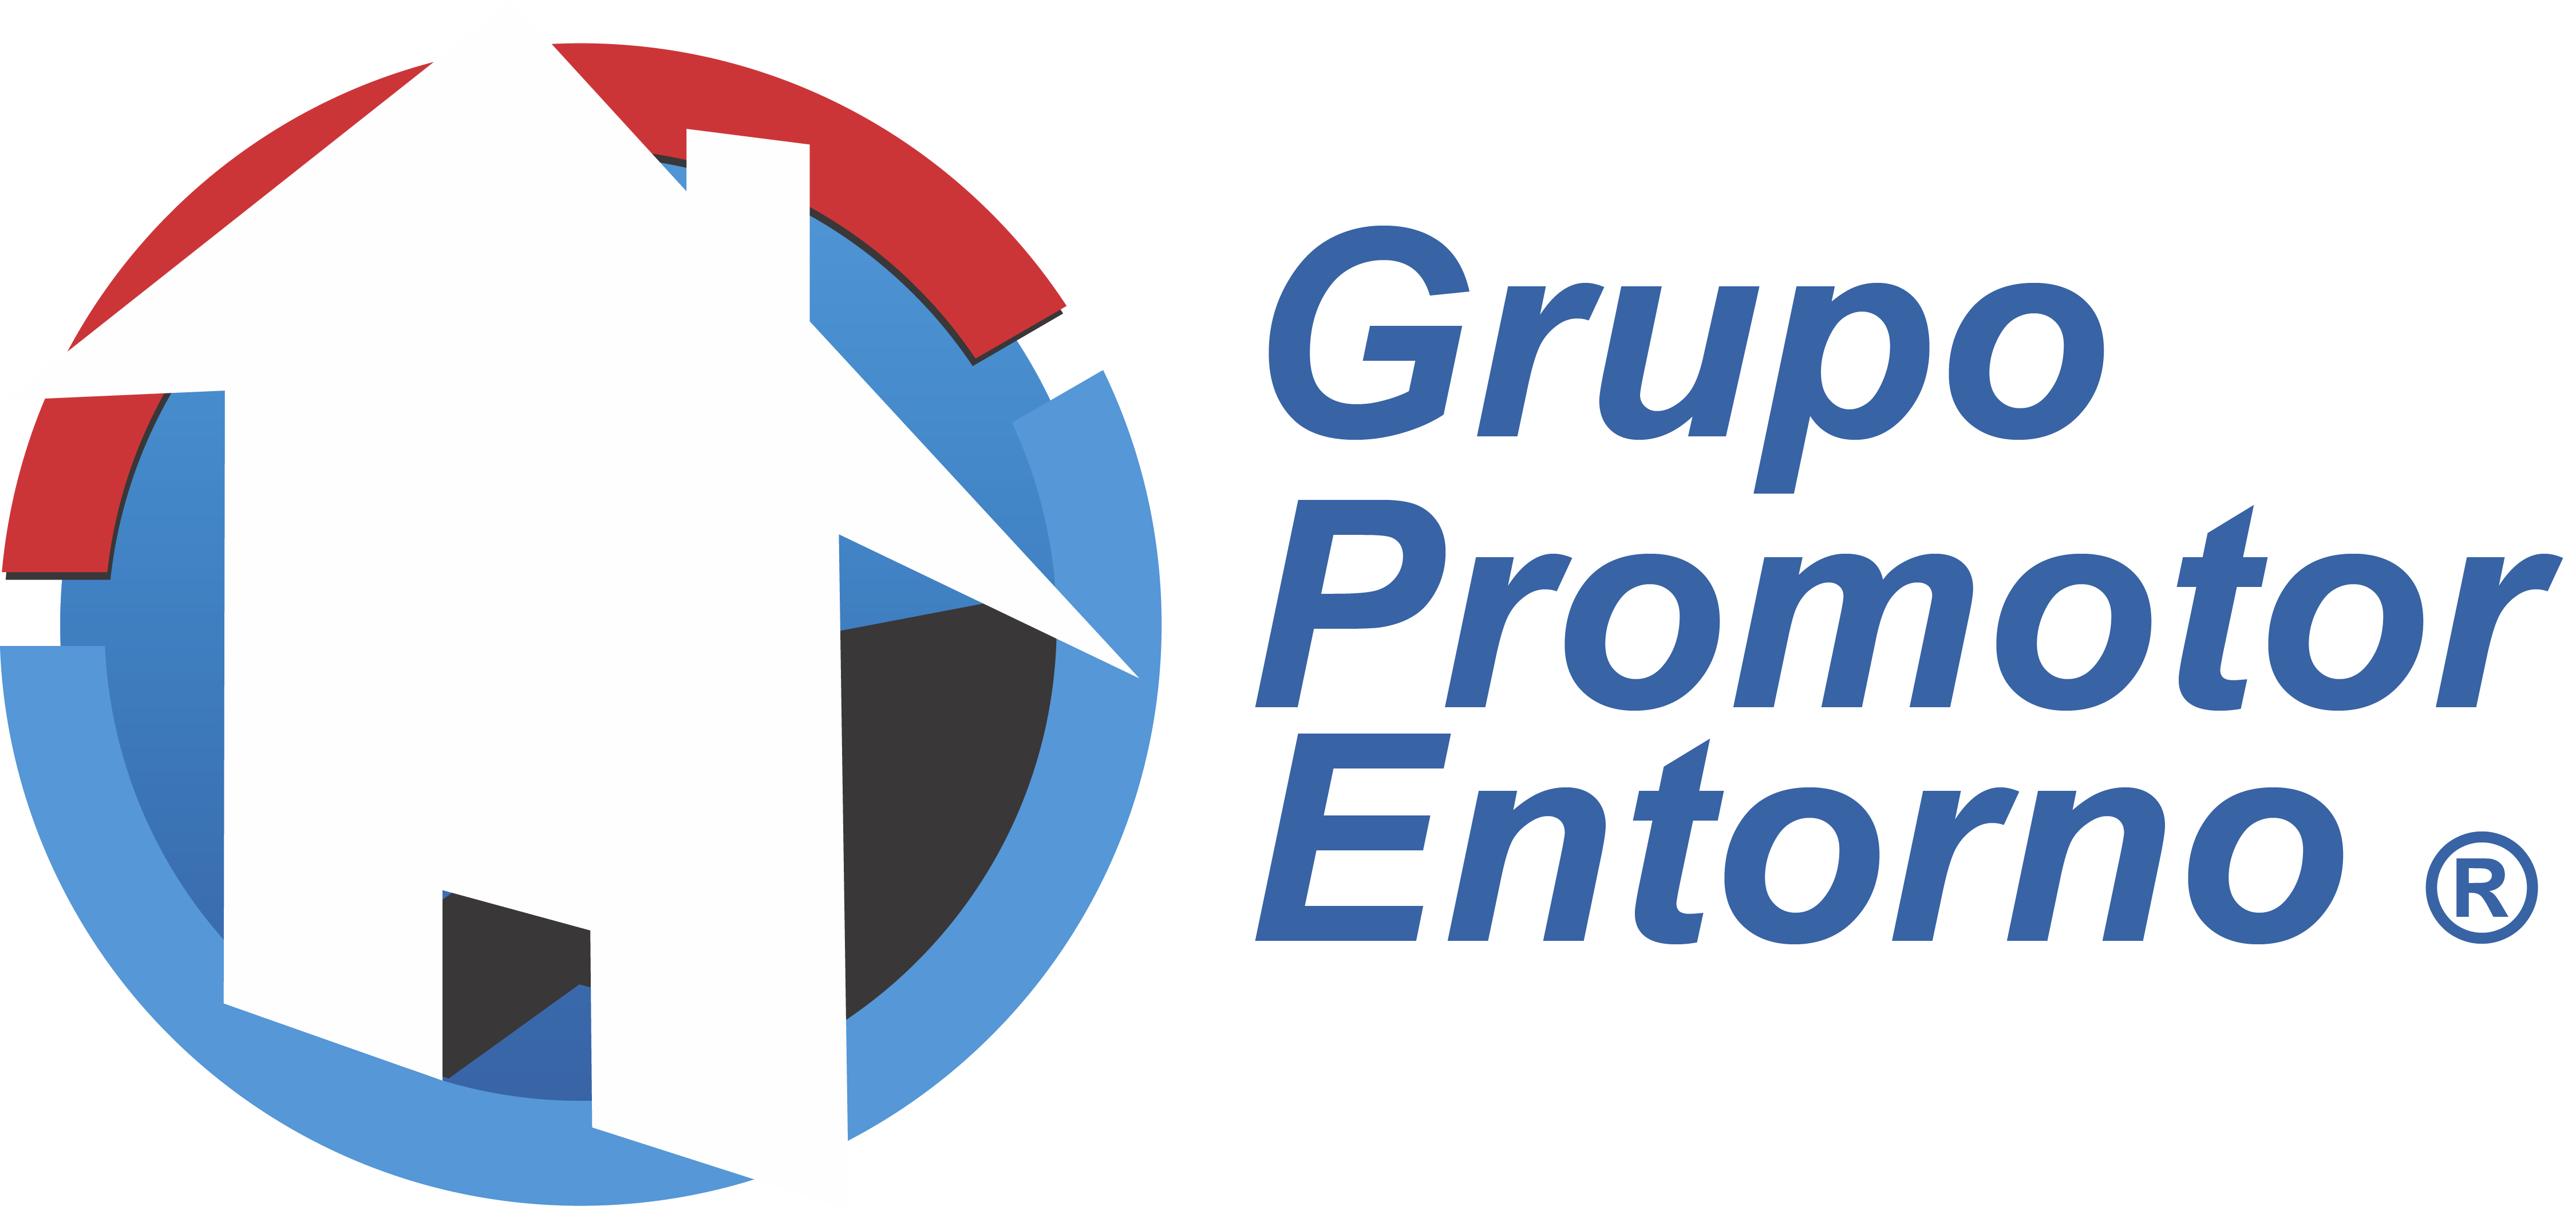 Grupo Entorno Logo